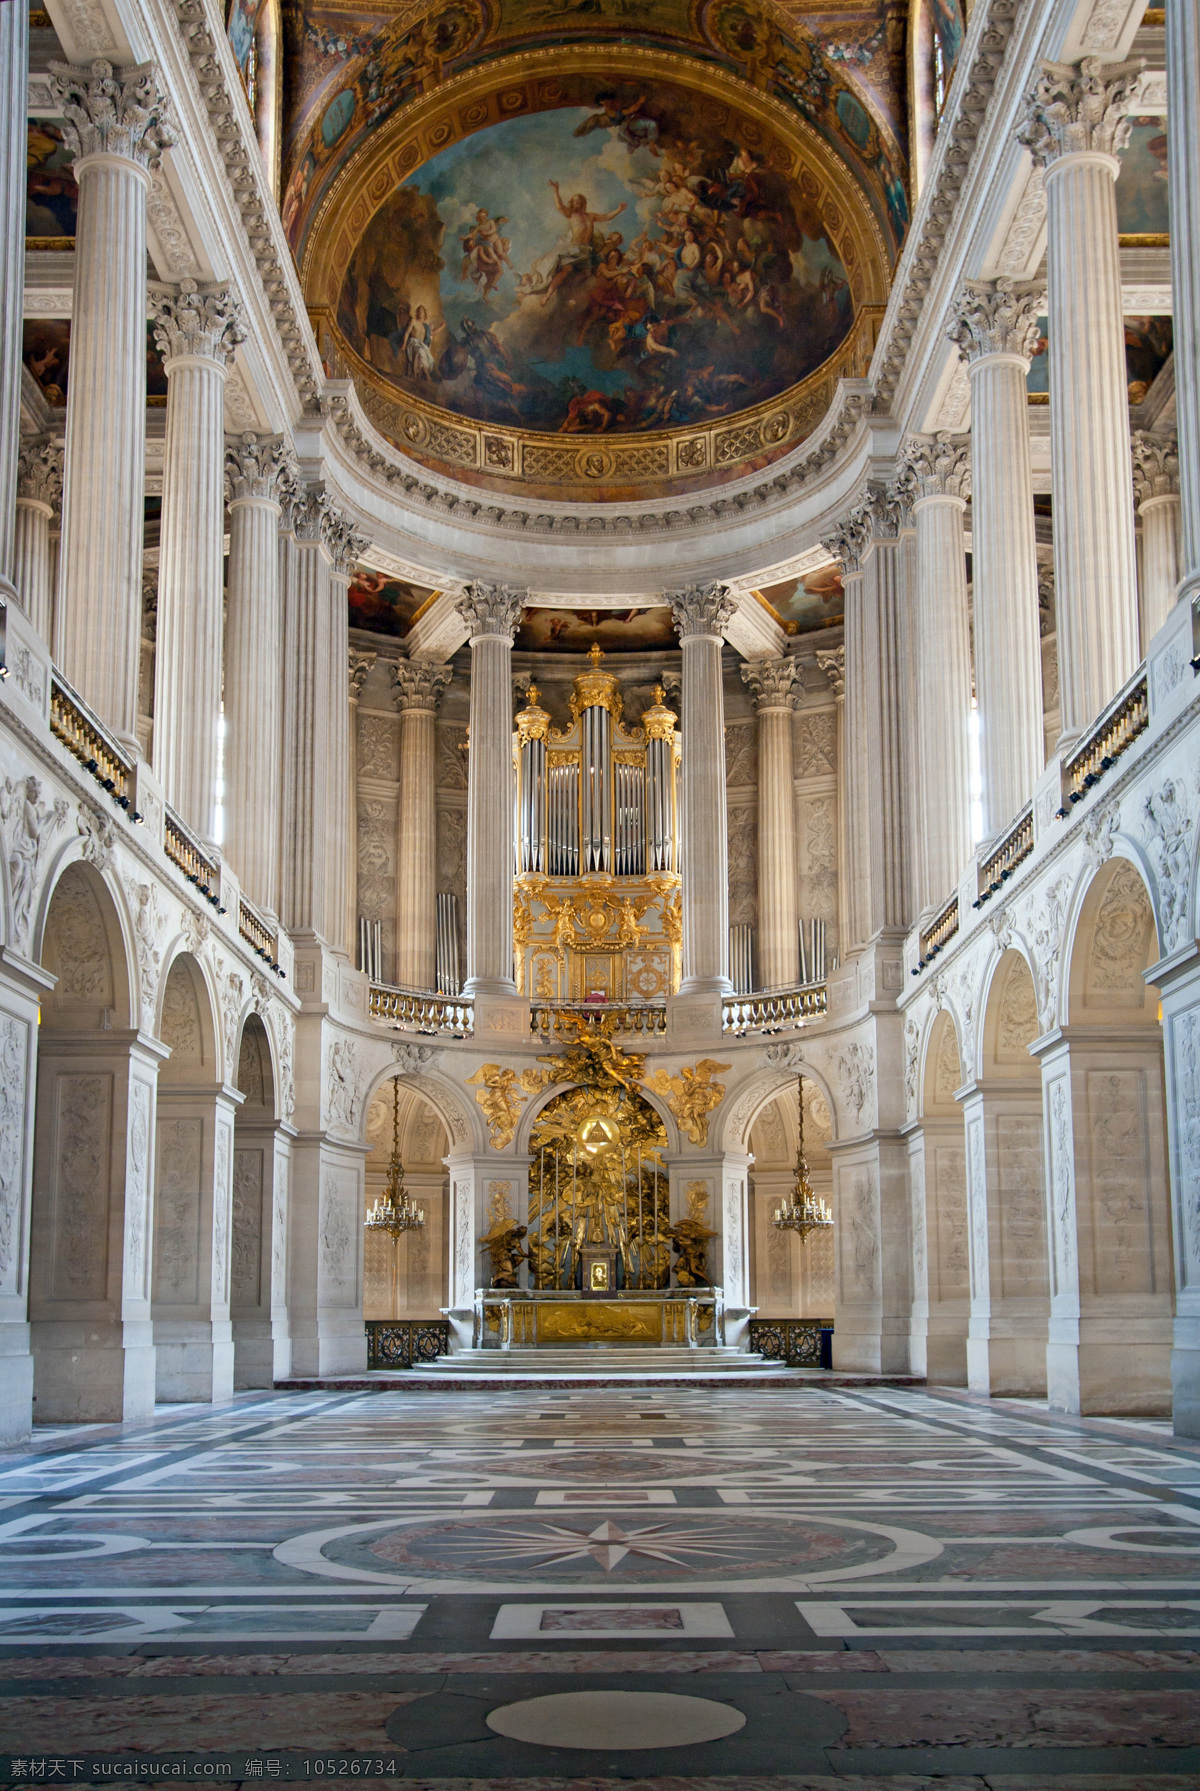 欧洲宫殿 欧洲 宫殿 圣殿 教堂 壁画 石柱 罗马石柱 金色 大气 气派 雕塑 室内摄影 建筑园林